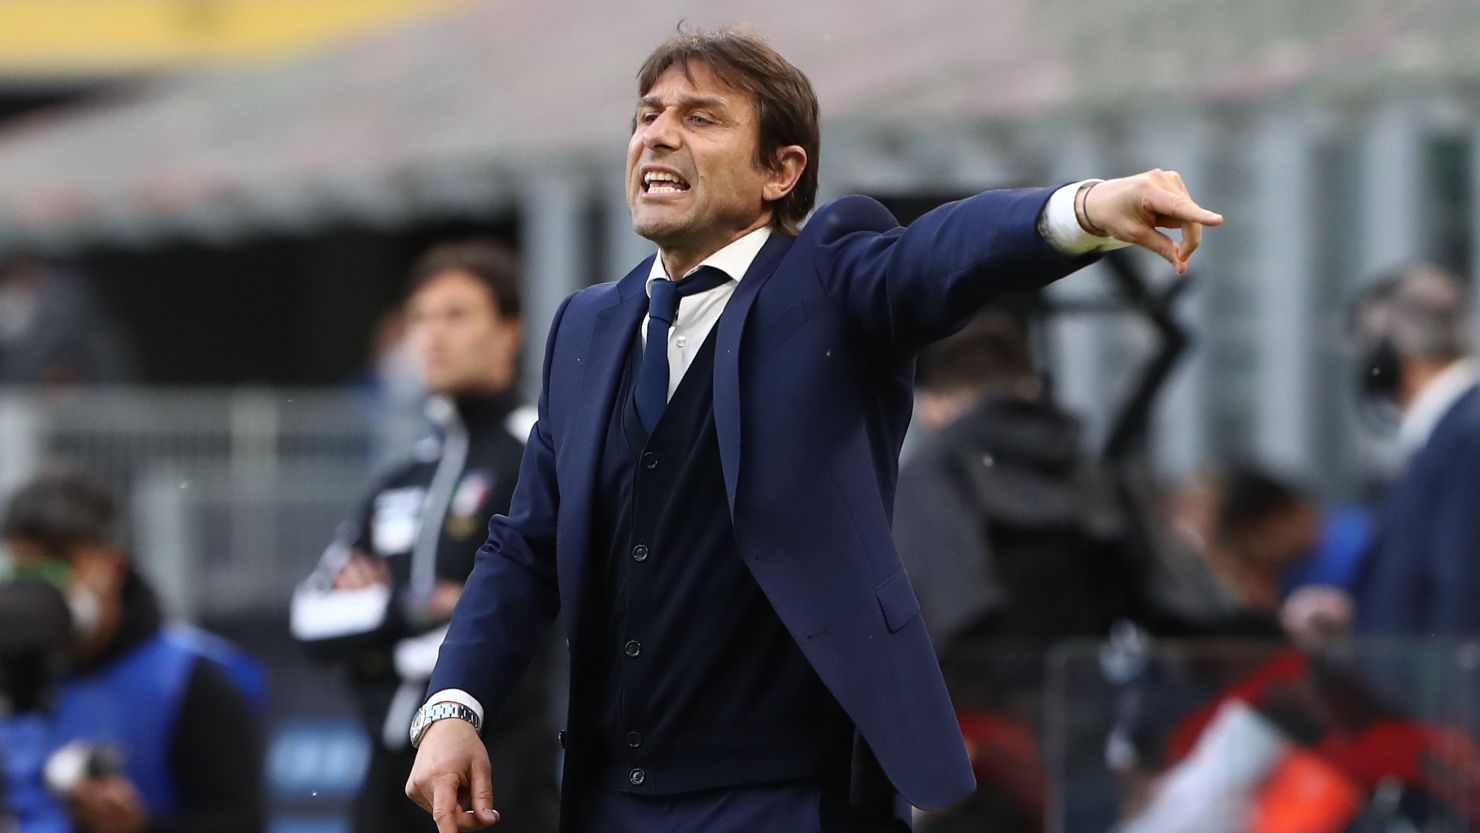 Antonio Conte named new Tottenham Hotspur coach | CNN